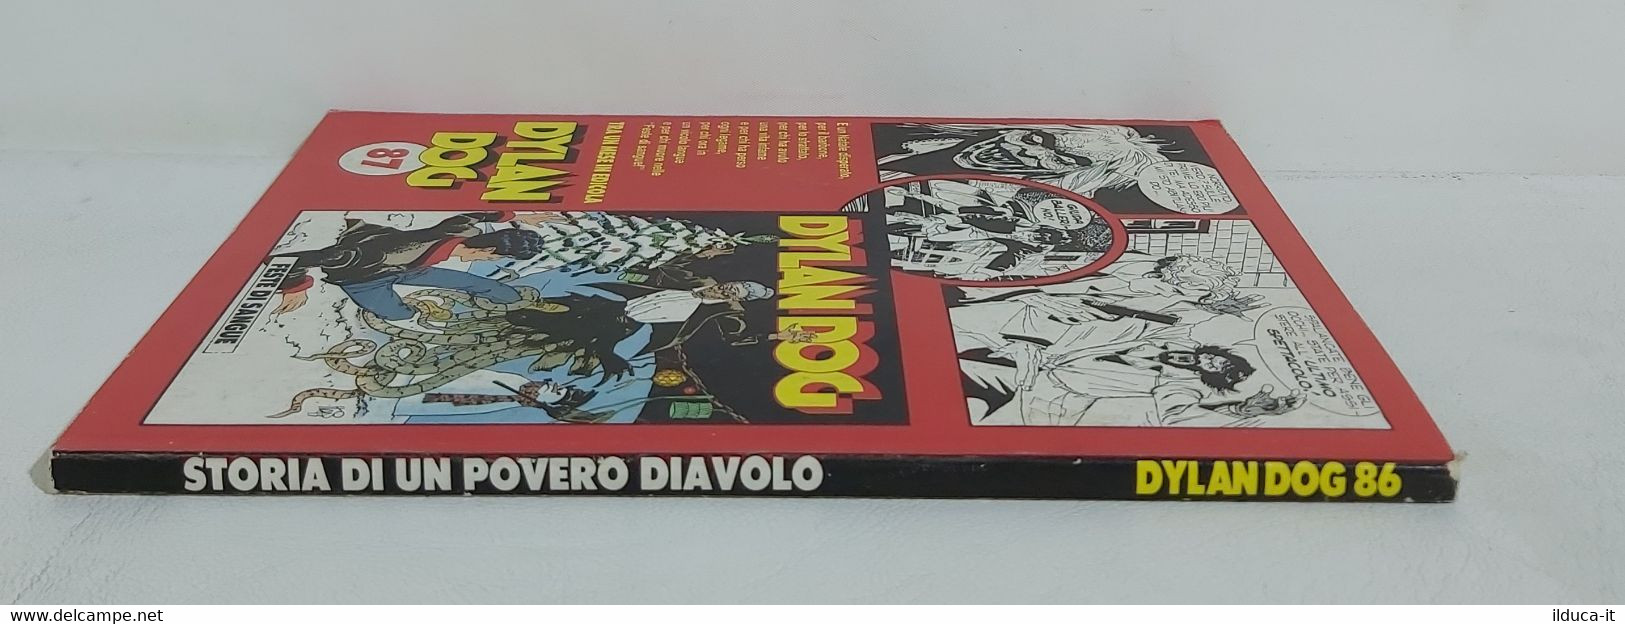 I104451 DYLAN DOG N. 86 - Storia Di Un Povero Diavolo - Bonelli 1993 - Bonelli